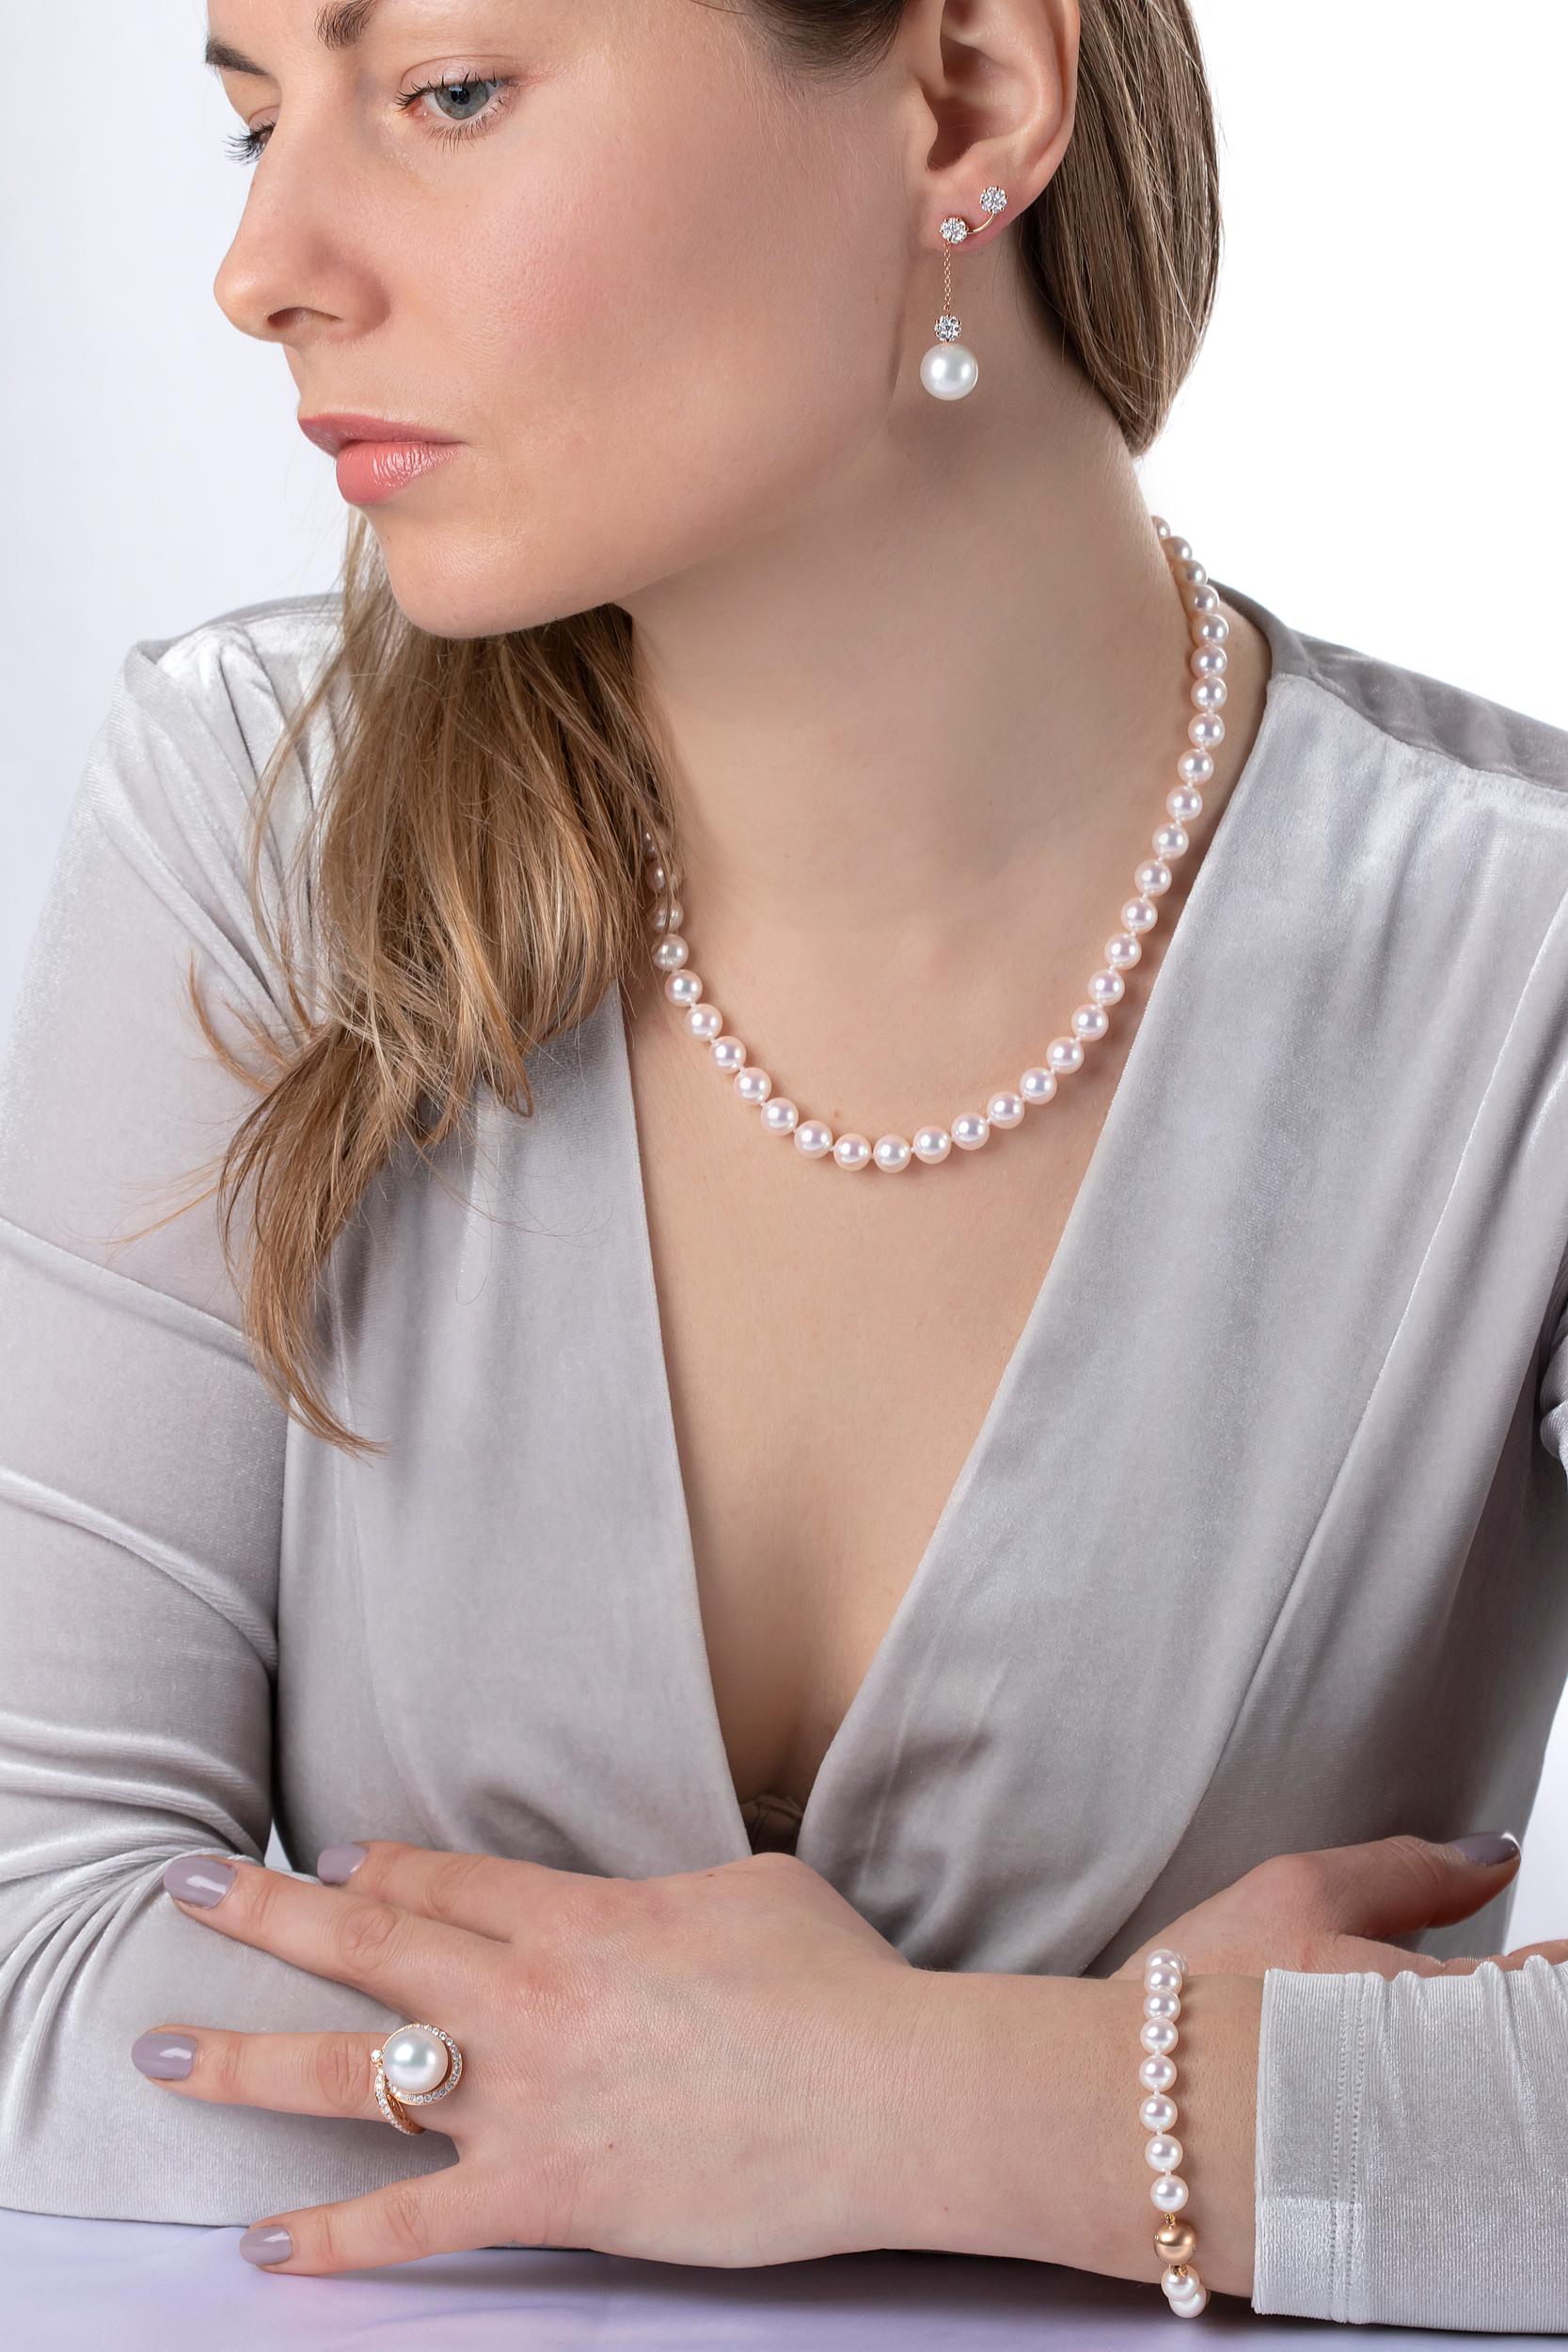 Dieses zeitlose Armband von Yoko London besteht aus hochwertigen 7-7,5 mm großen japanischen Akoya-Perlen mit einem dezenten Rosé-Farbton und ist mit einem diamantbesetzten Verschluss aus 18 Karat Roségold versehen. Dieses klassische Armband, das in